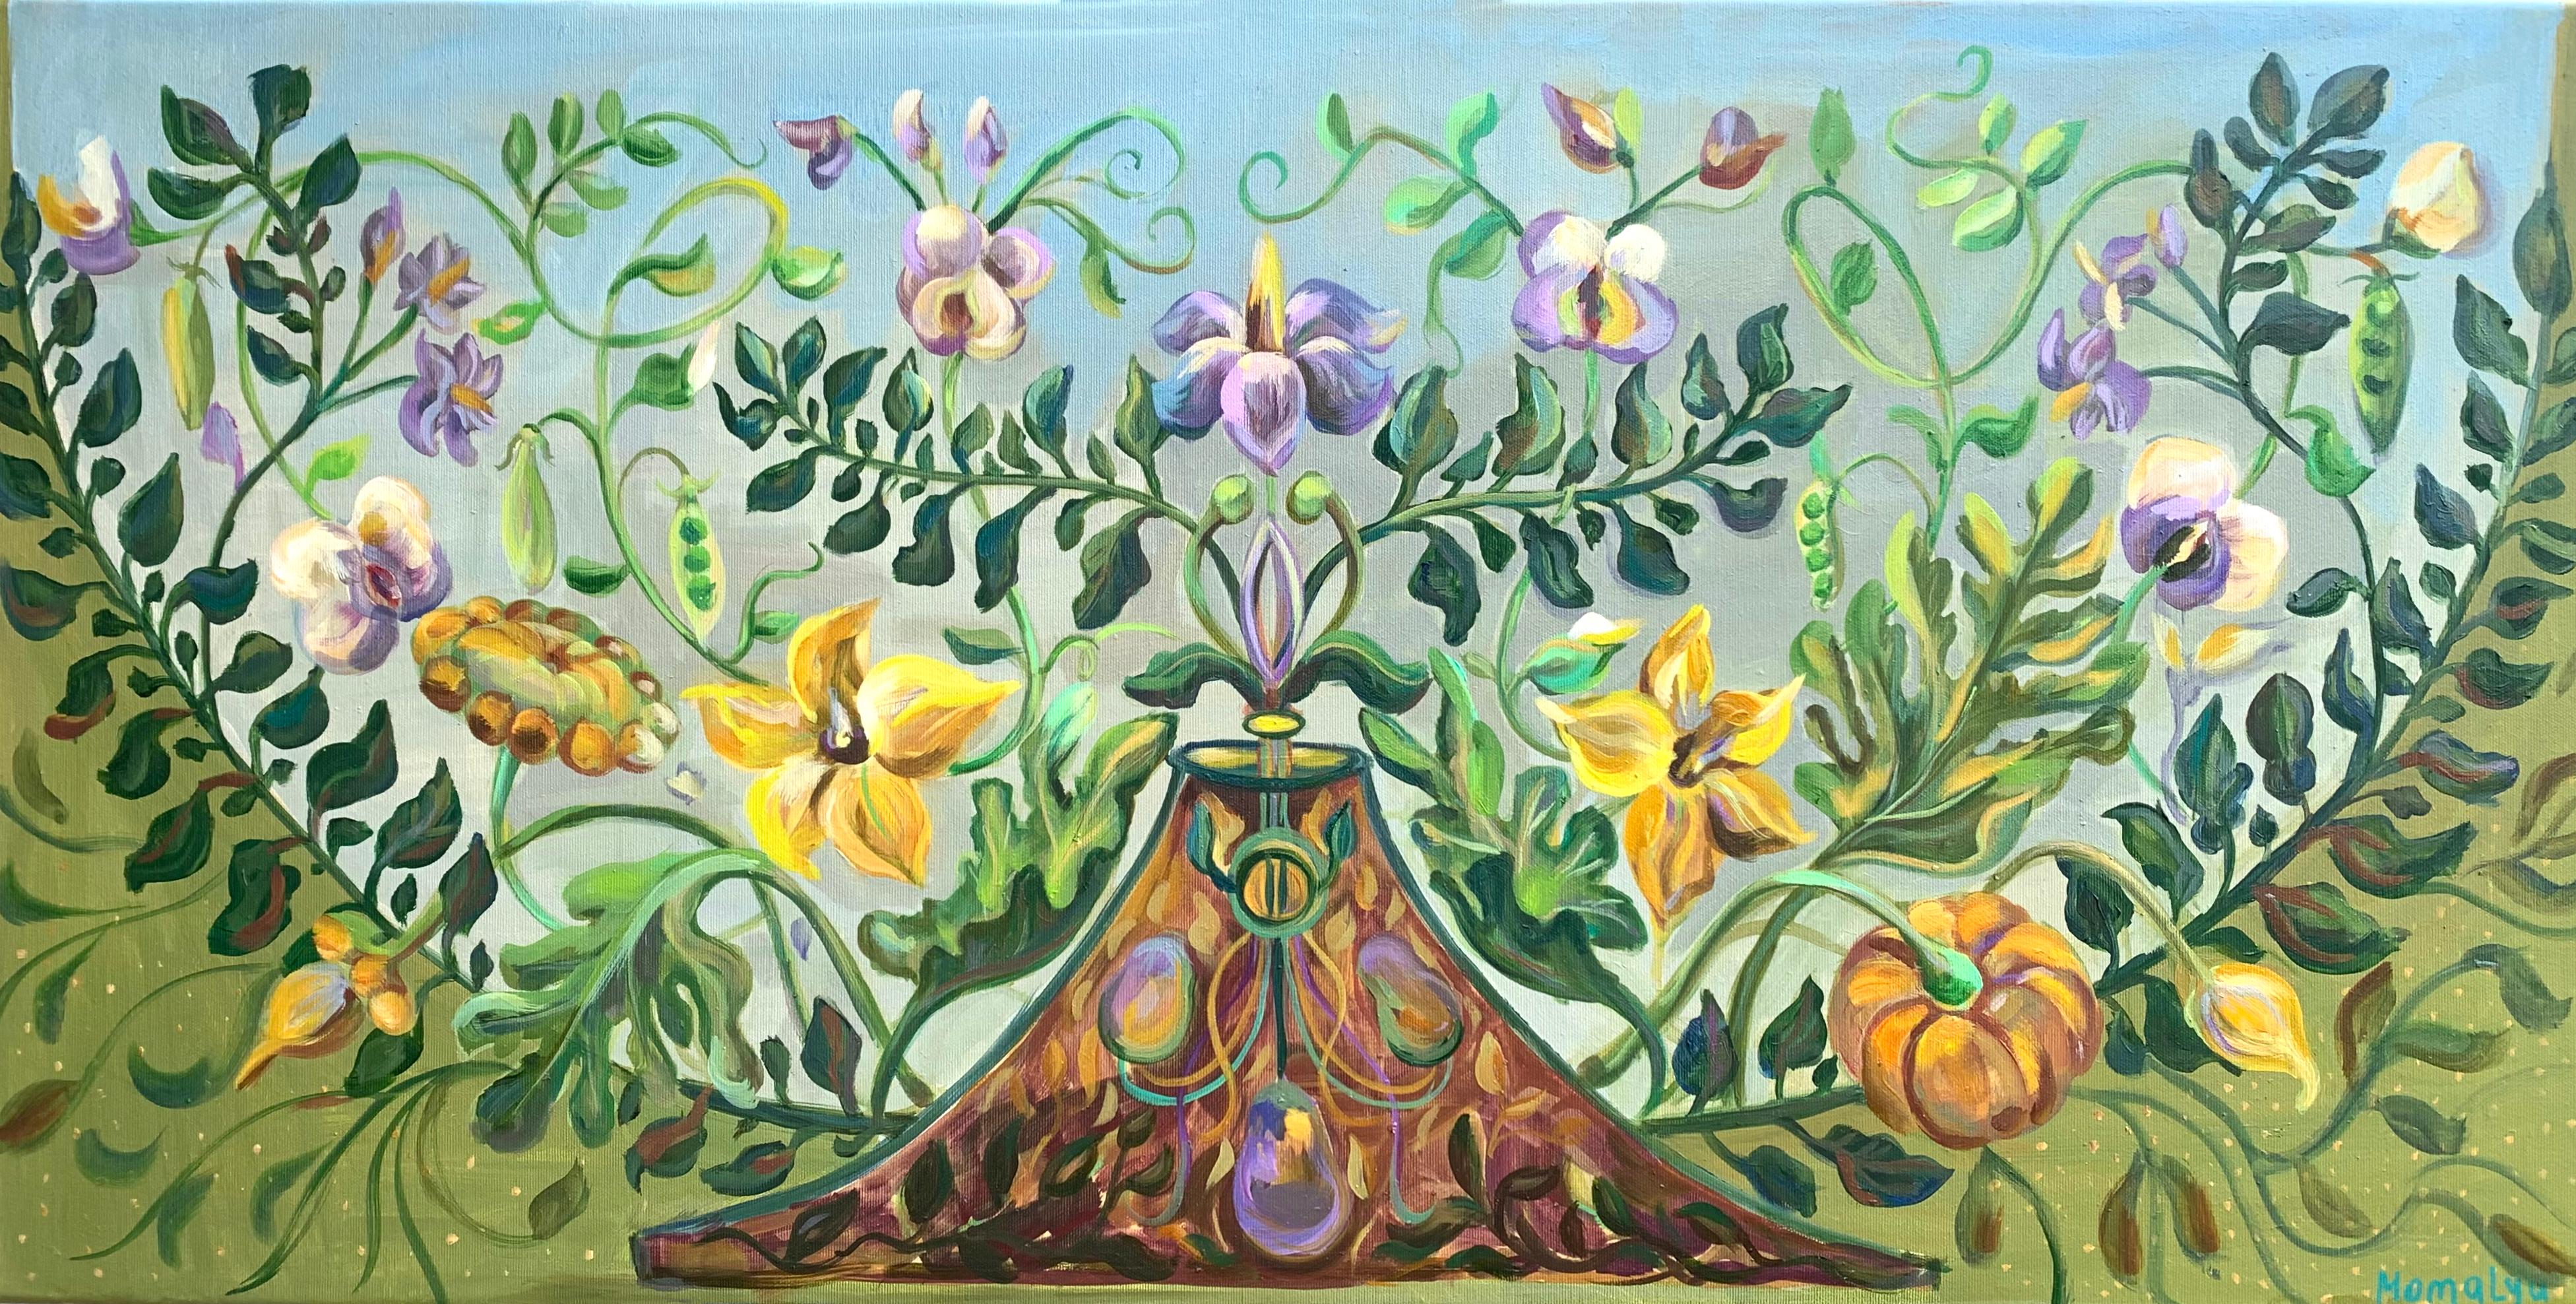 Das friedliche Königreich der Pflanzen. botanisches dekoratives Ölgemälde